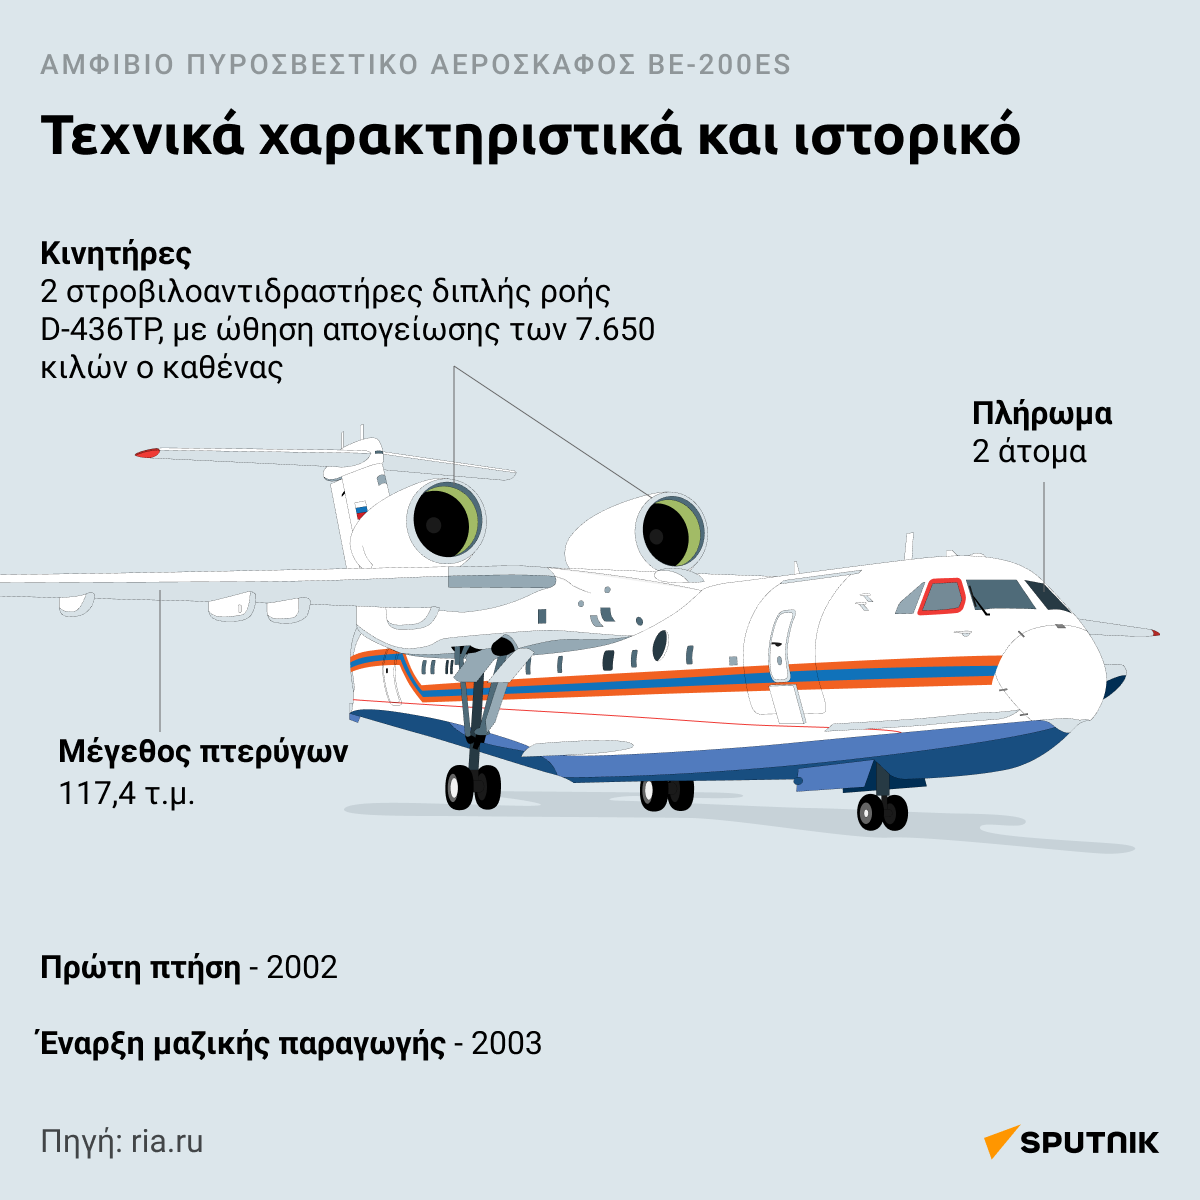 Το ρωσικό θηρίο Beriev-200 - Sputnik Ελλάδα